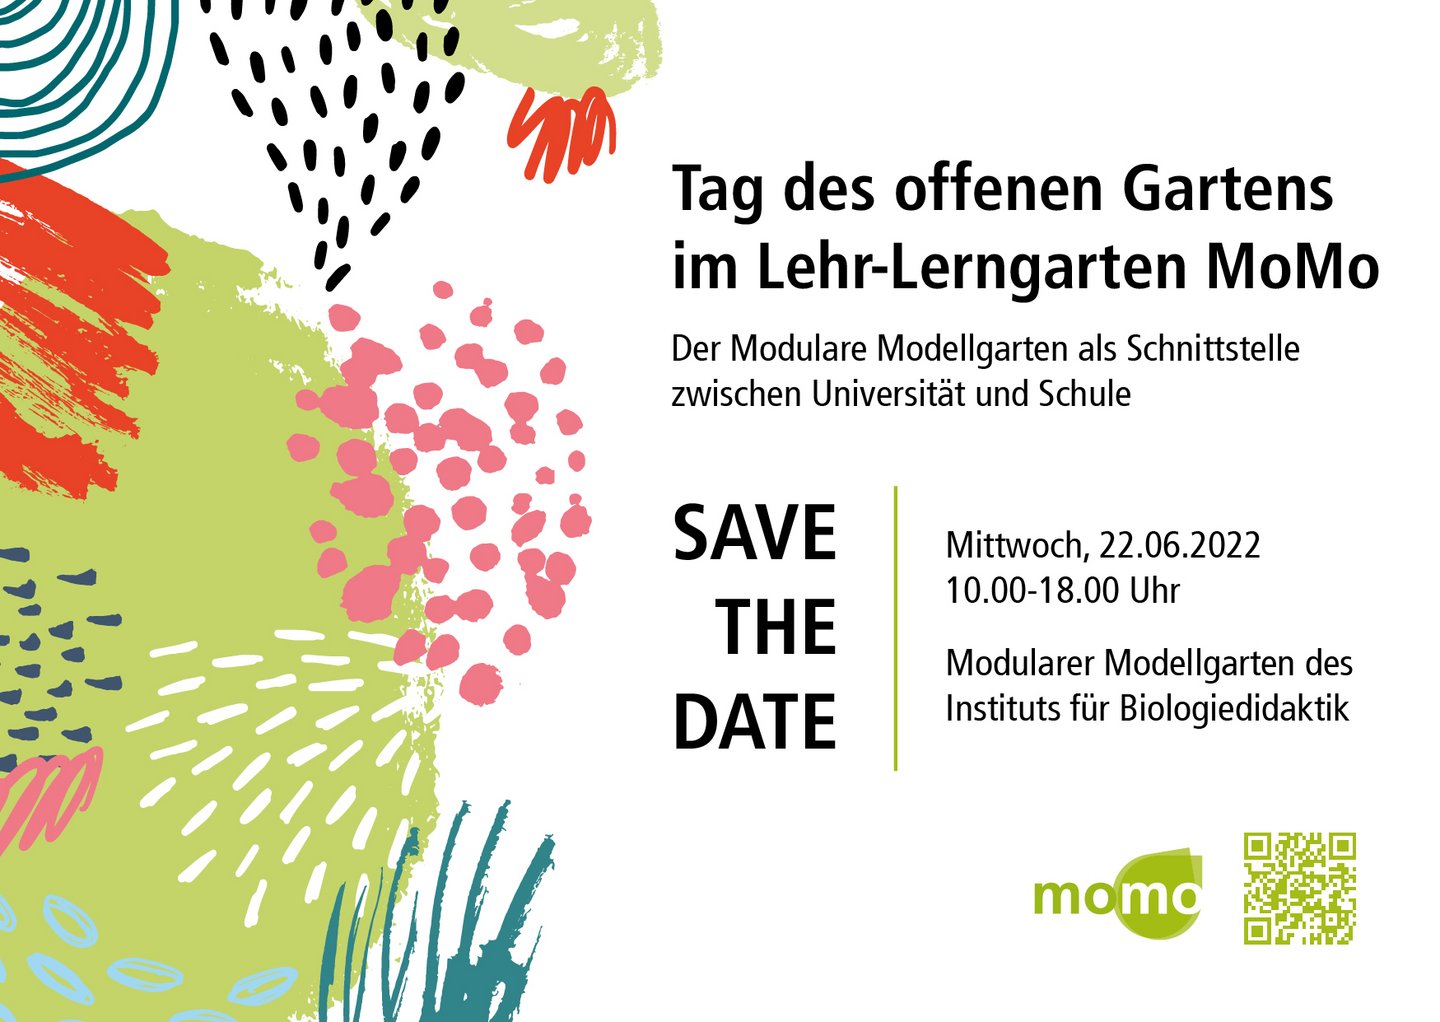 Save The Date: Tag des offenen Gartens im Lehr-Lerngarten MoMo